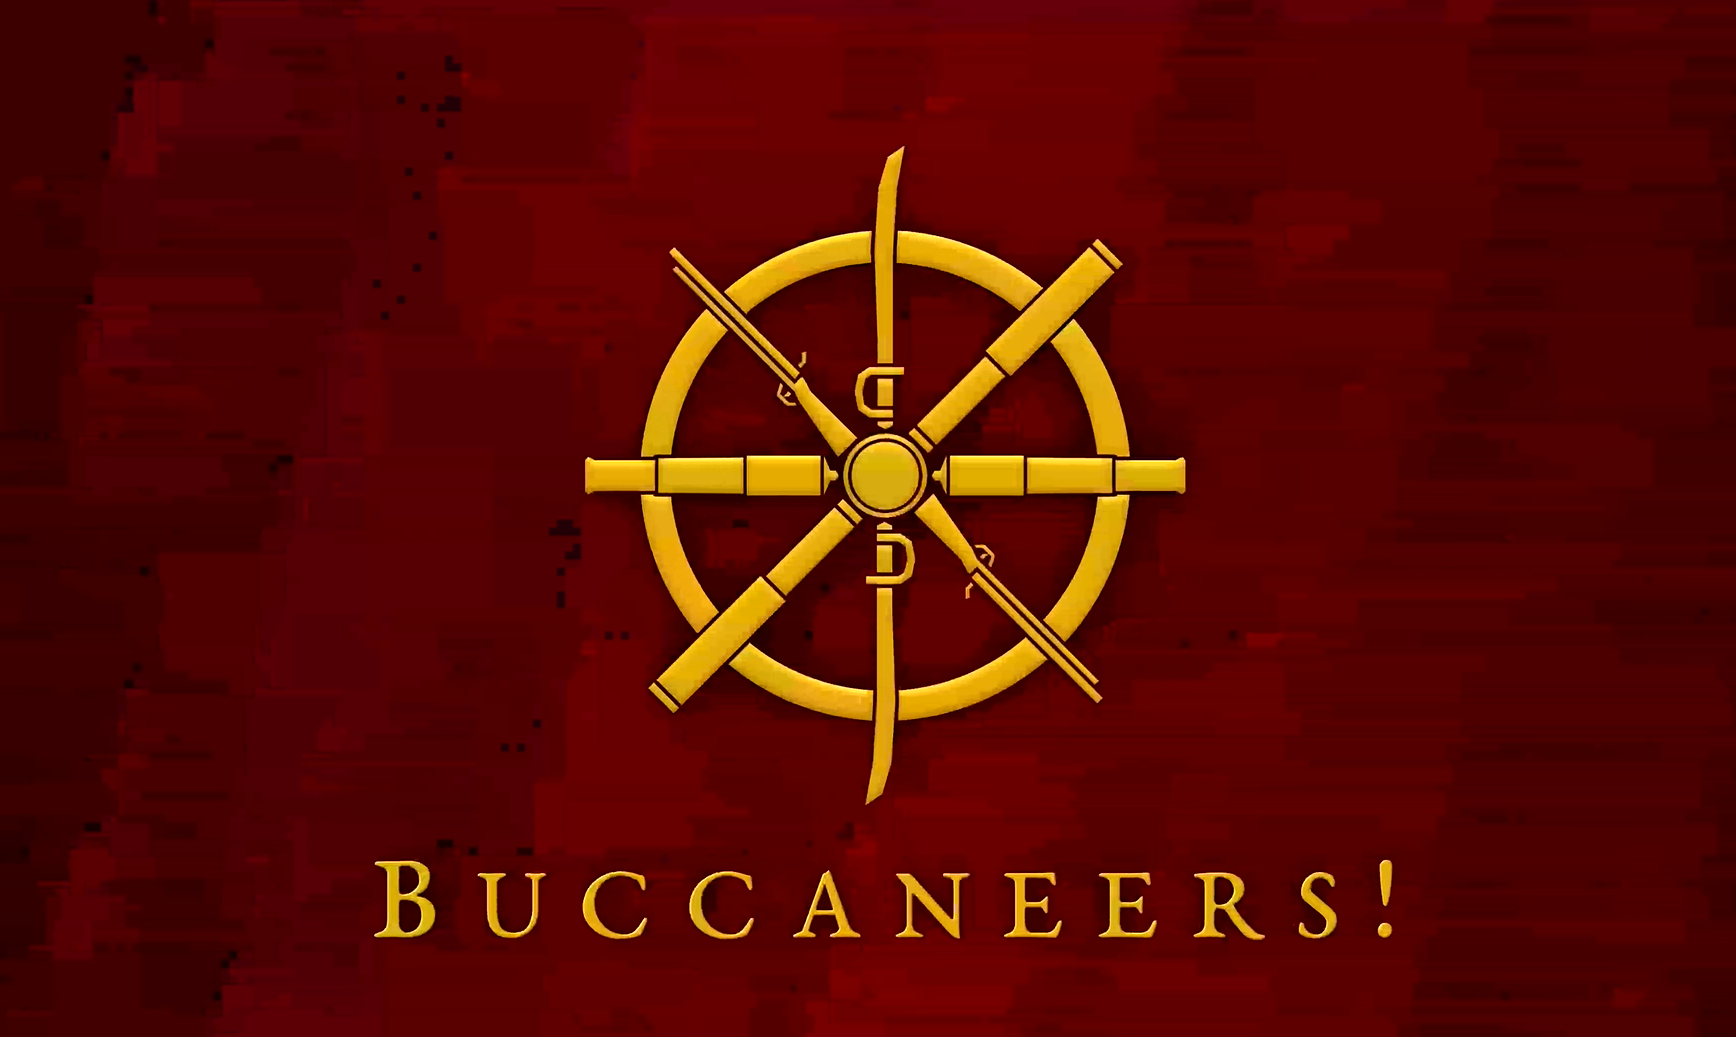 Buccaneers! Free Download GameTrex